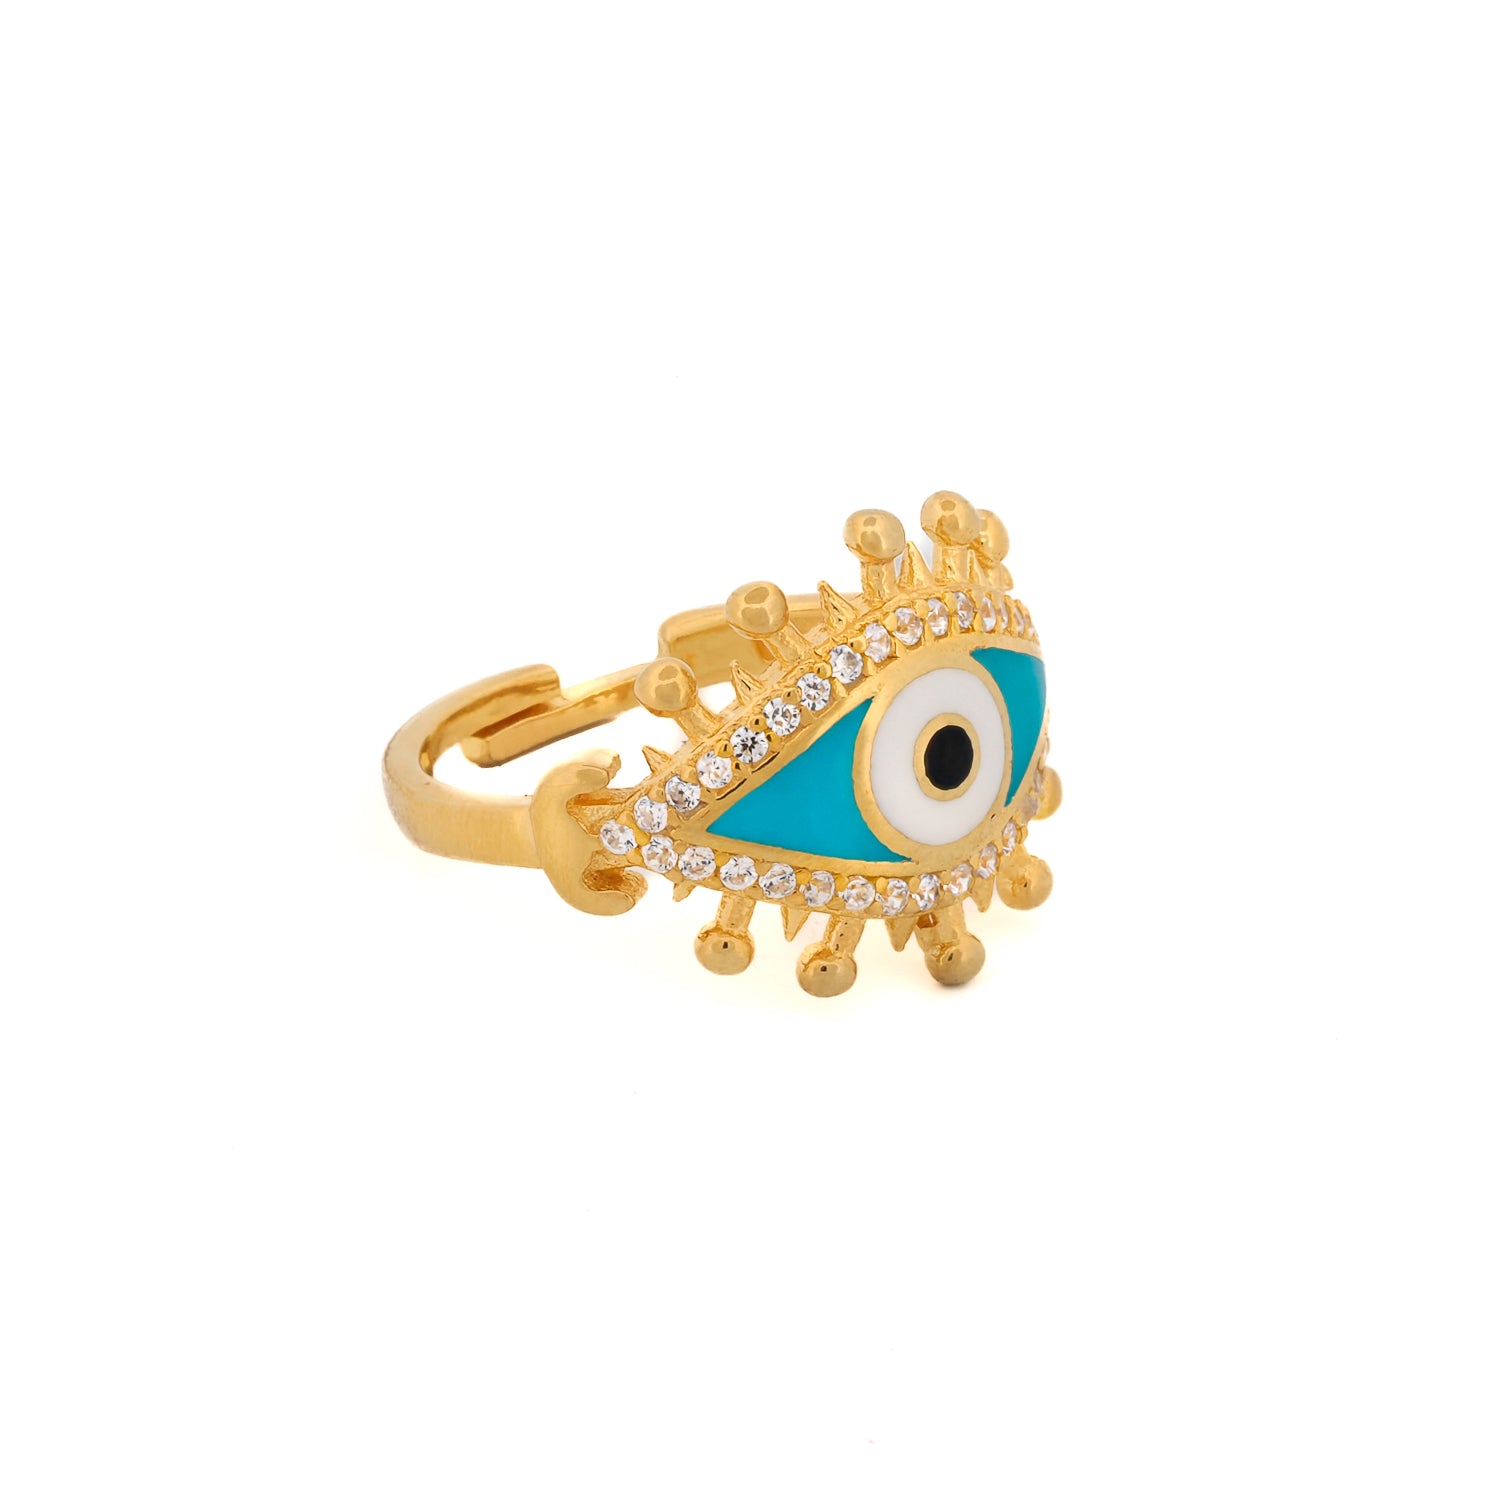 Vibrant Turquoise Enamel Evil Eye Ring